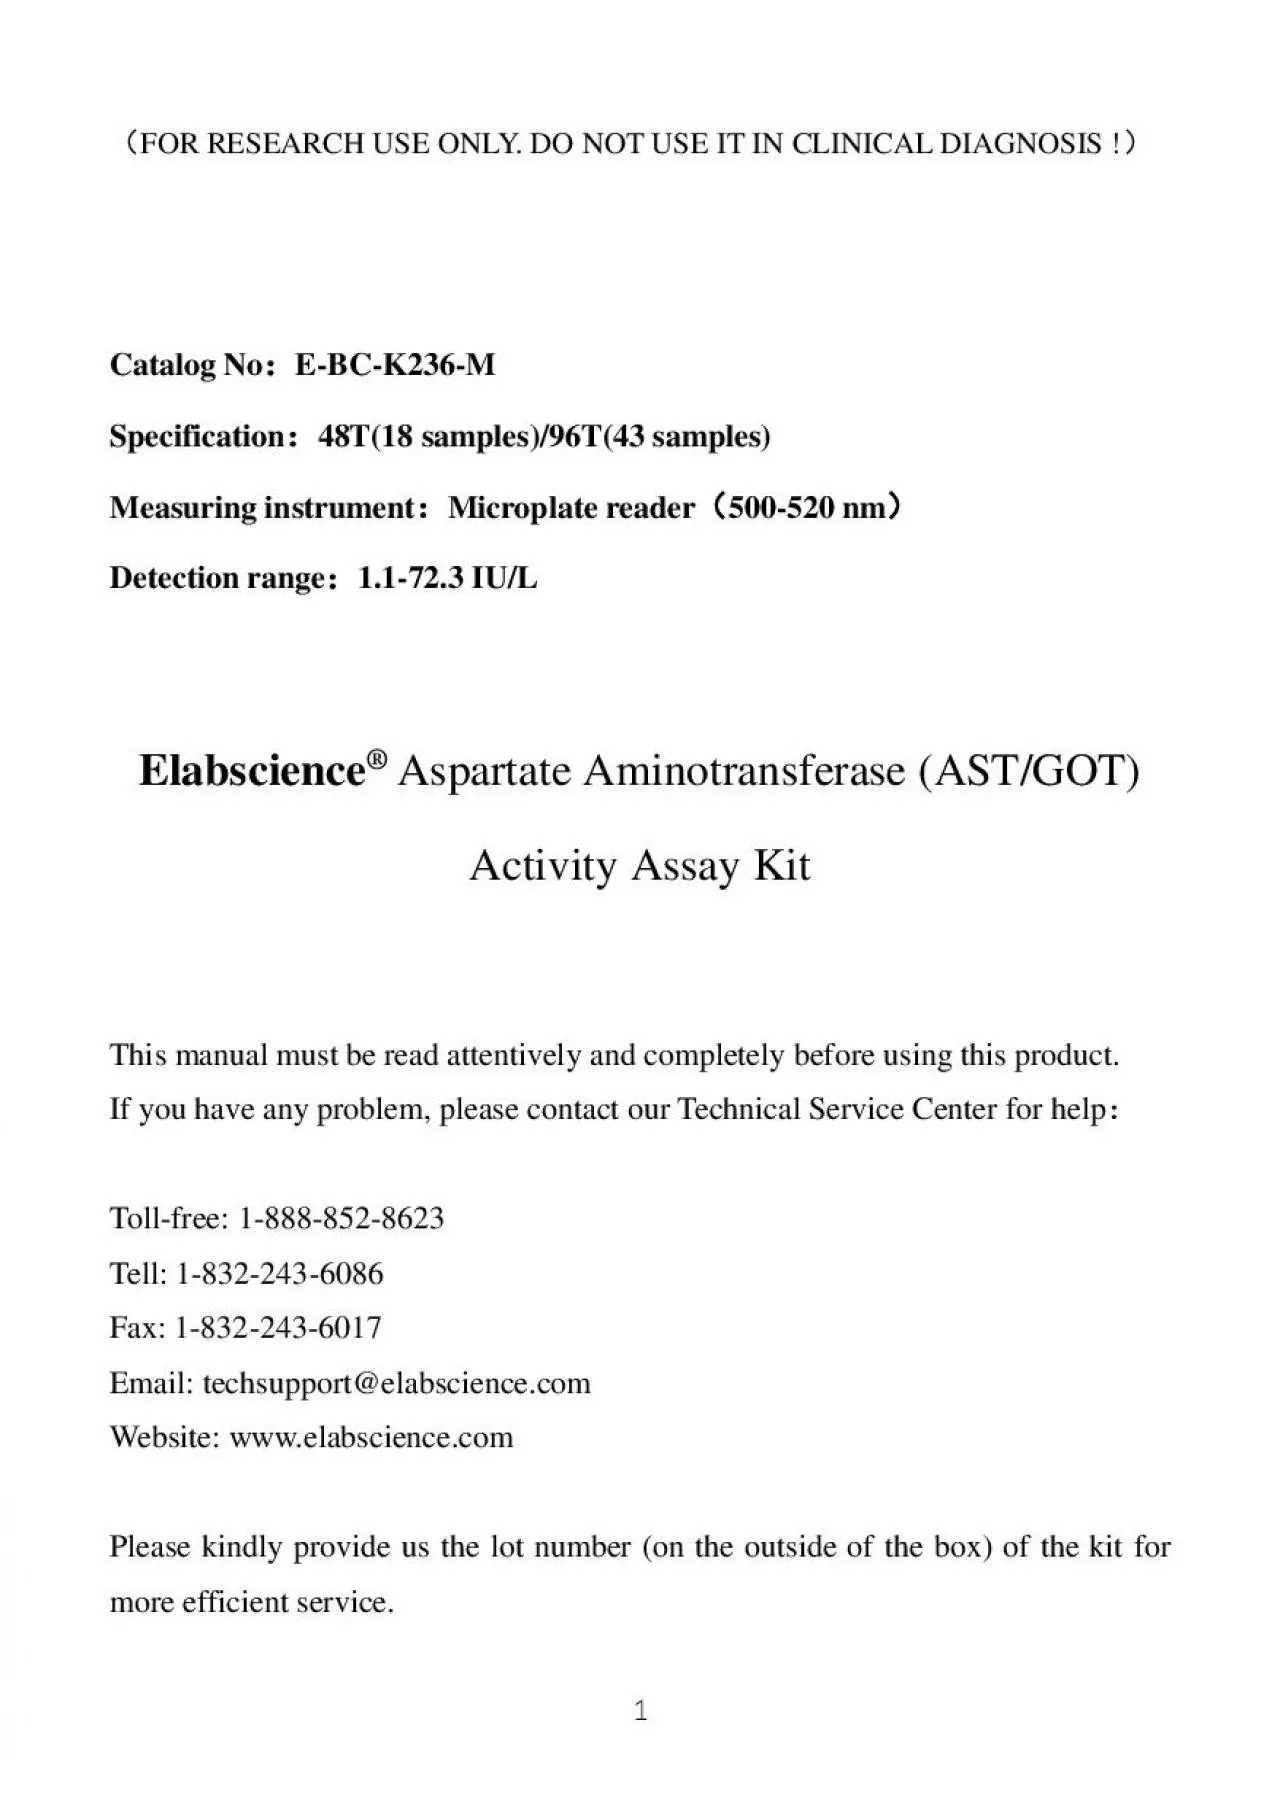 Aspartate Aminotransferase ASTGOT Activity